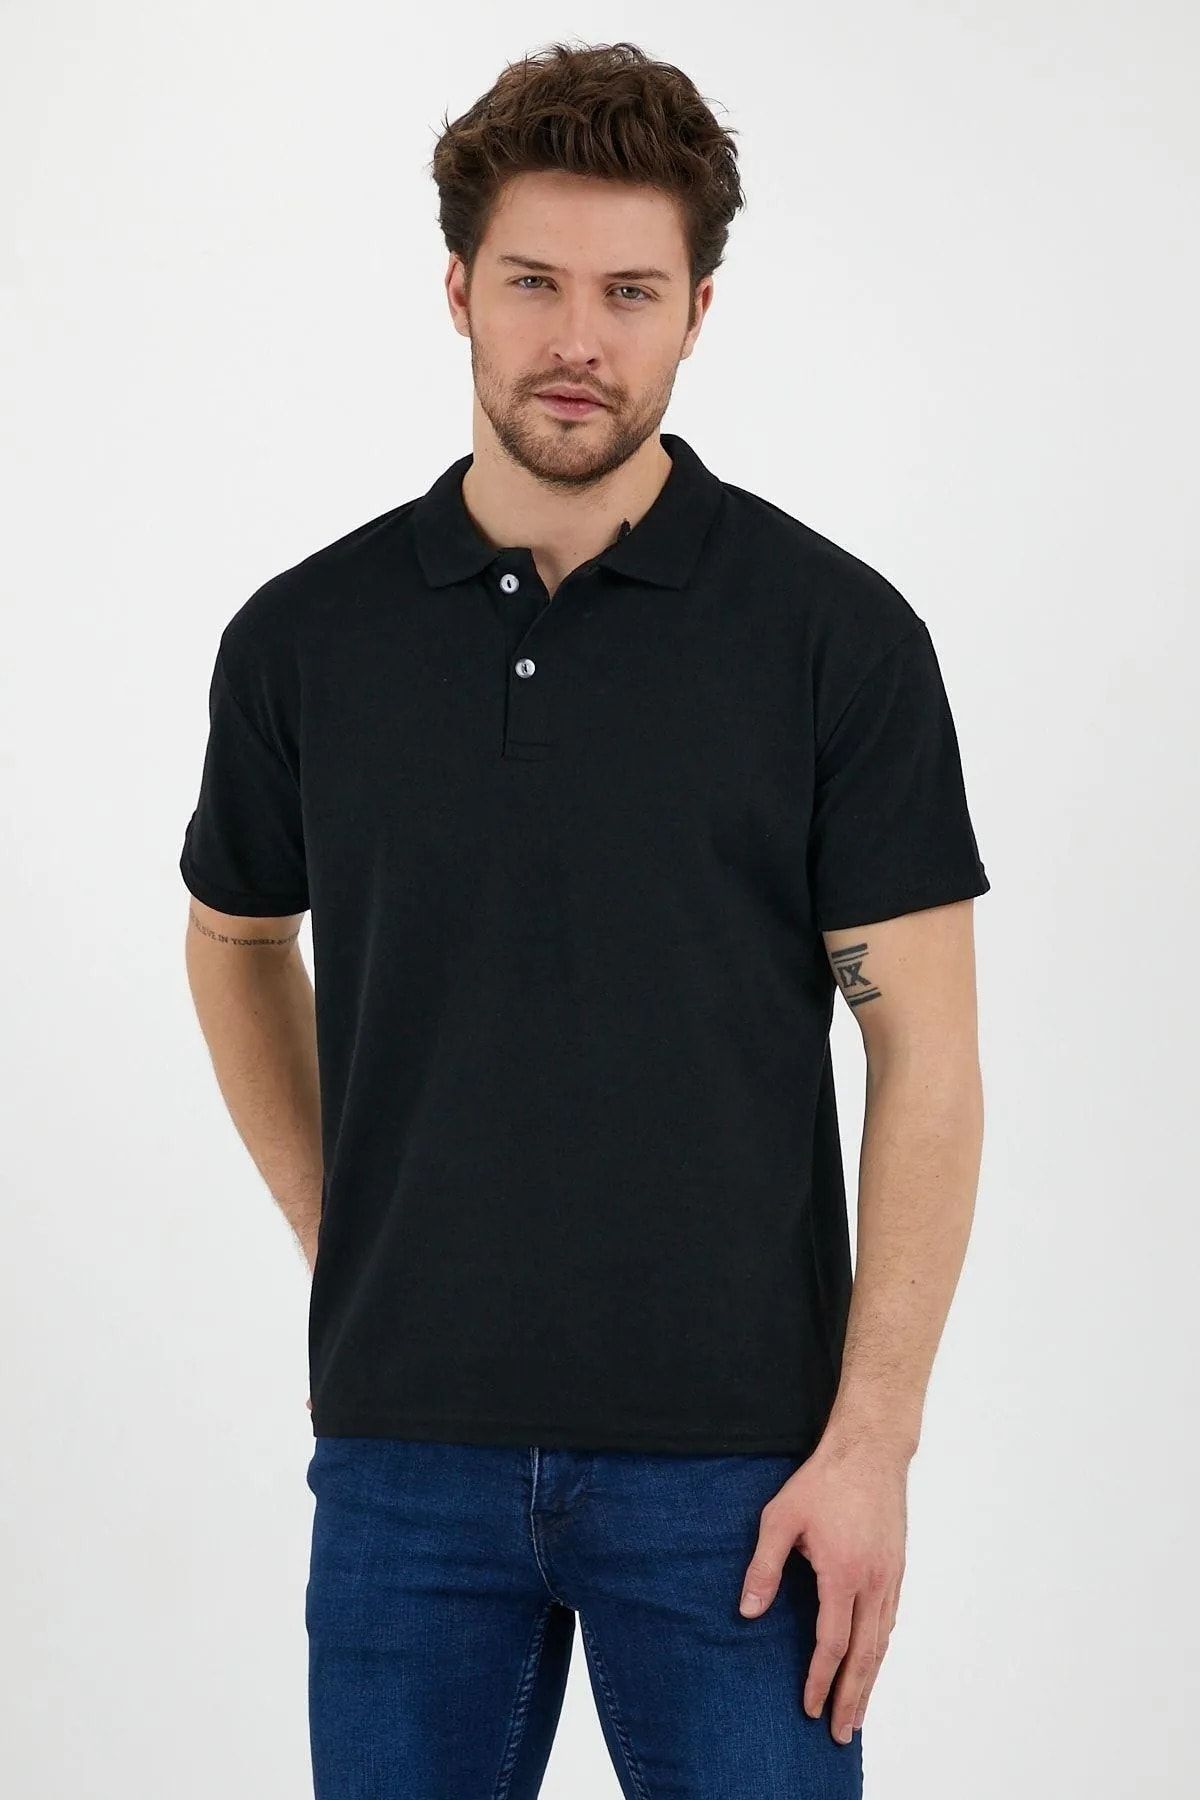 EKZMODA Siyah Basic Düz Renk Polo Yakalı Erkek Tişört - Siyah Tisort - Erkek T-shirt